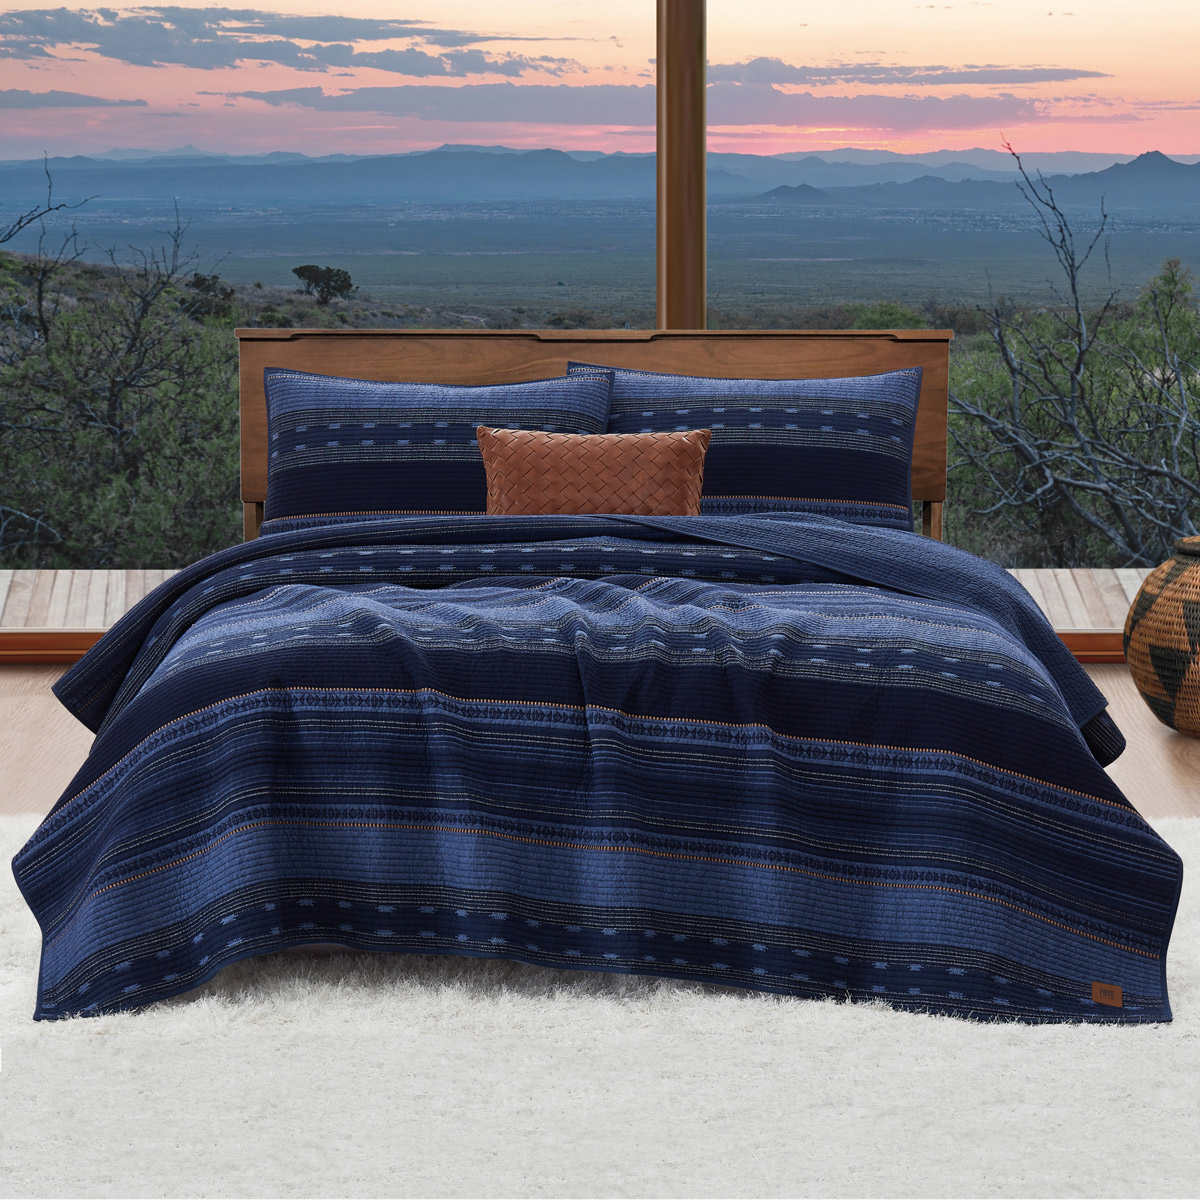 FRYE 4-piece Quilt Set, Upper Mesa Falls | Costco